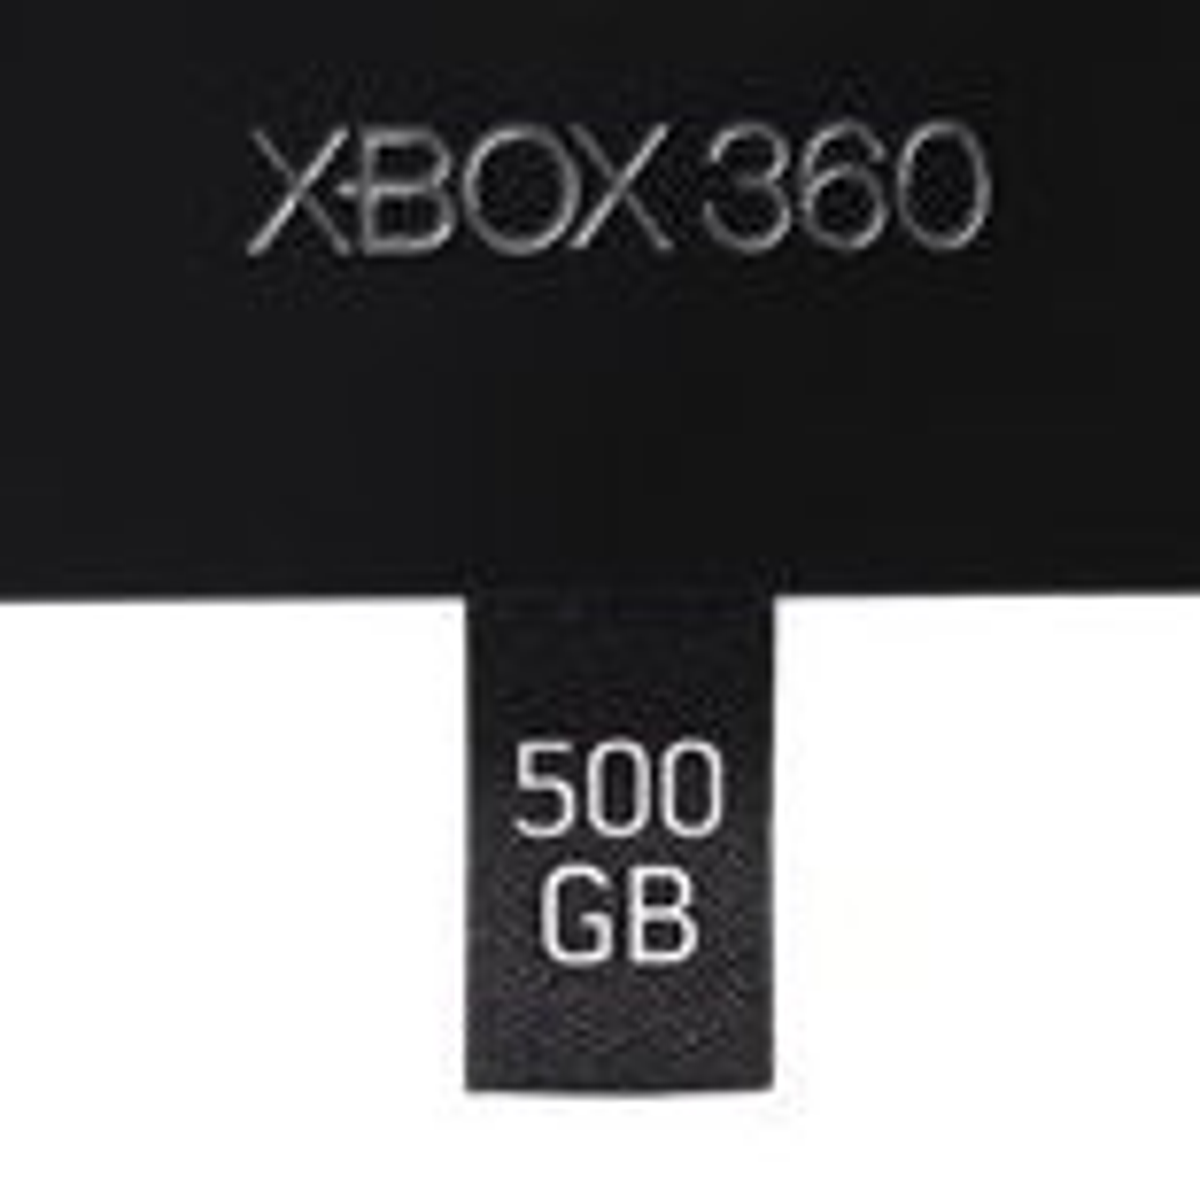 Disparo Horno tira Microsoft anuncia un disco duro de 500GB para Xbox 360 | Eurogamer.es